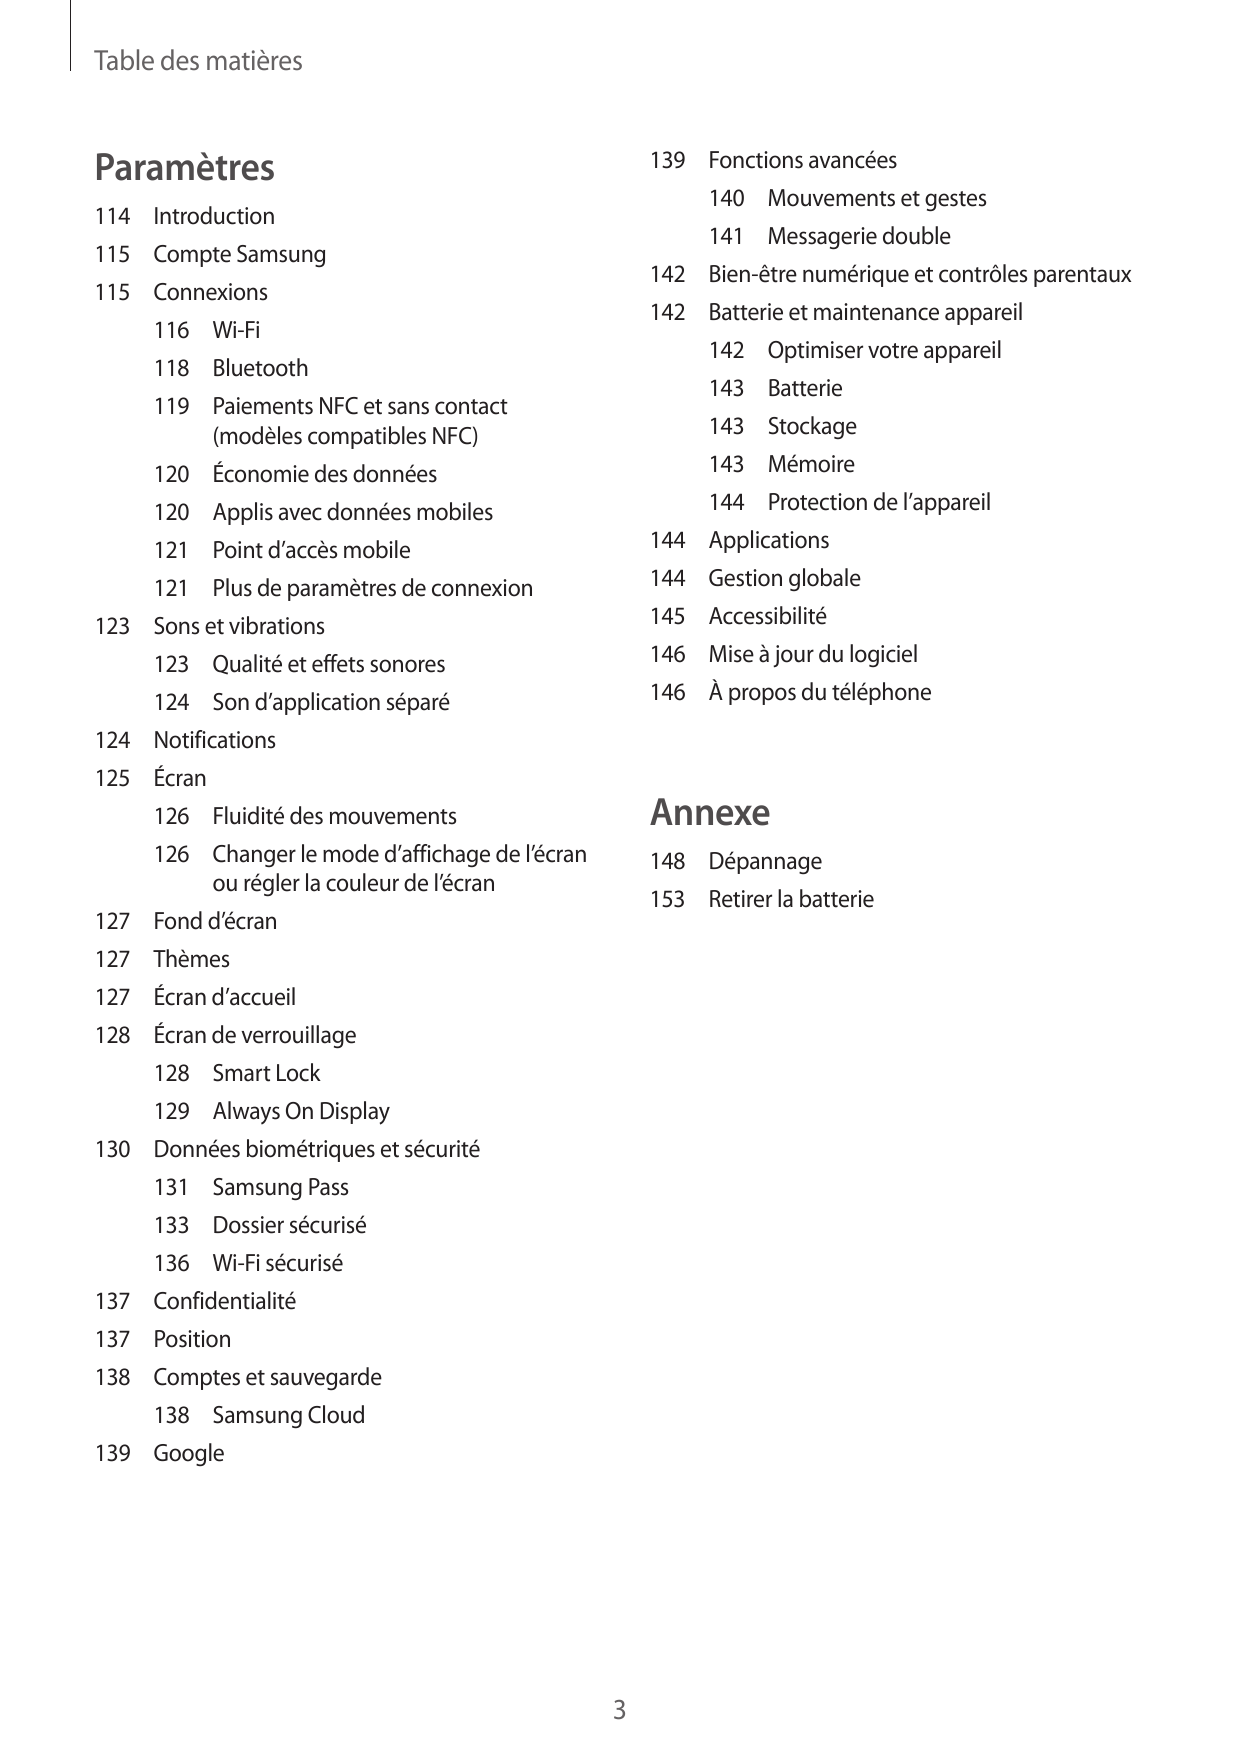 Table des matièresParamètres139 Fonctions avancées140 Mouvements et gestes114Introduction141 Messagerie double115 Compte Samsung